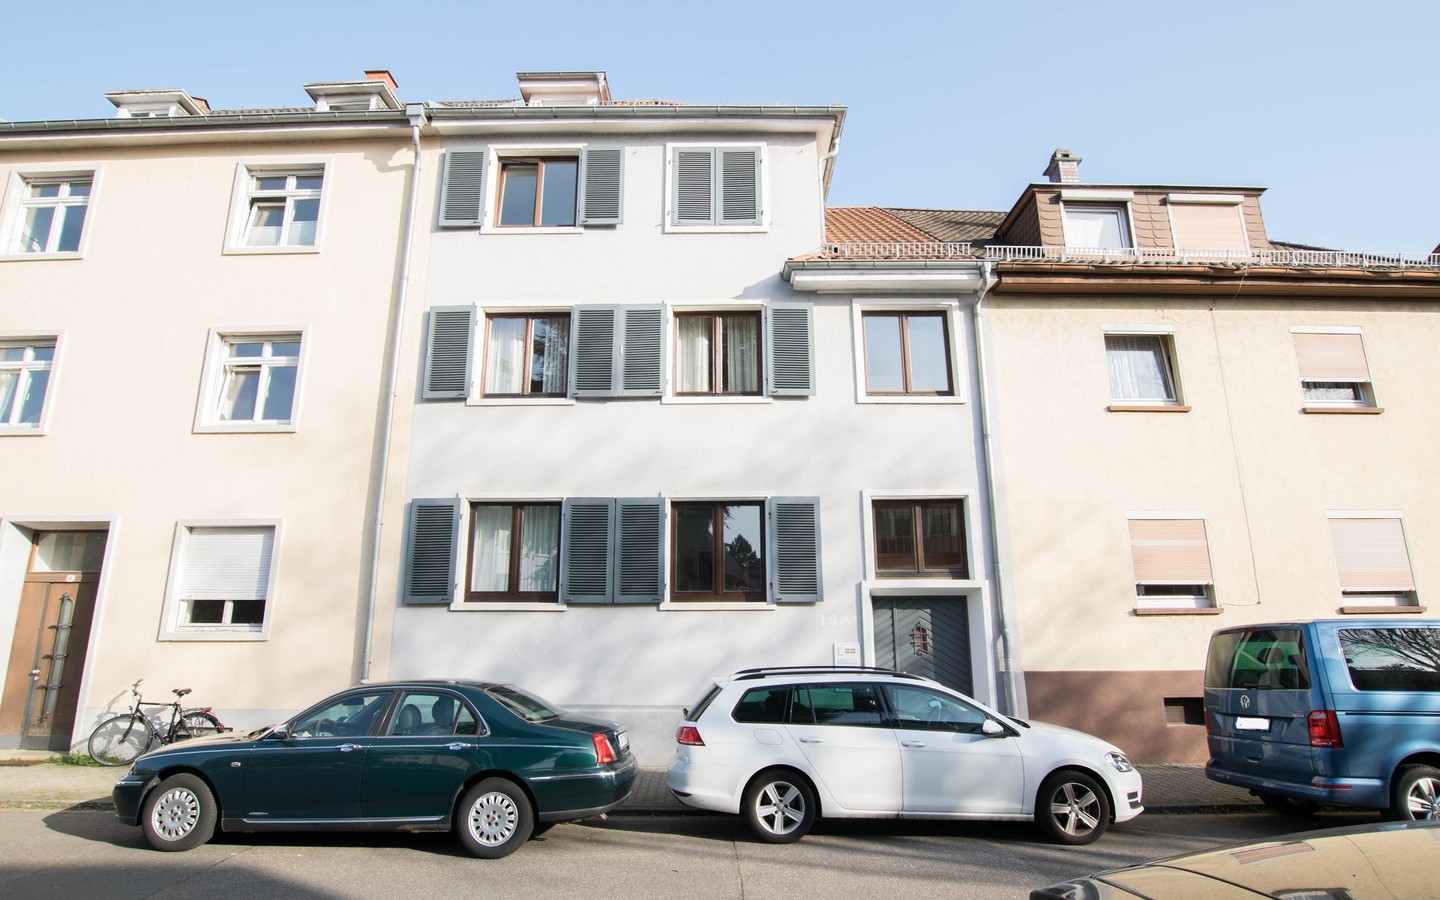 Hausansicht - Heidelberg-Neuenheim - Toplage Quinckestraße: Bezugsfreie 3 Zimmerwohnung mit großem Balkon